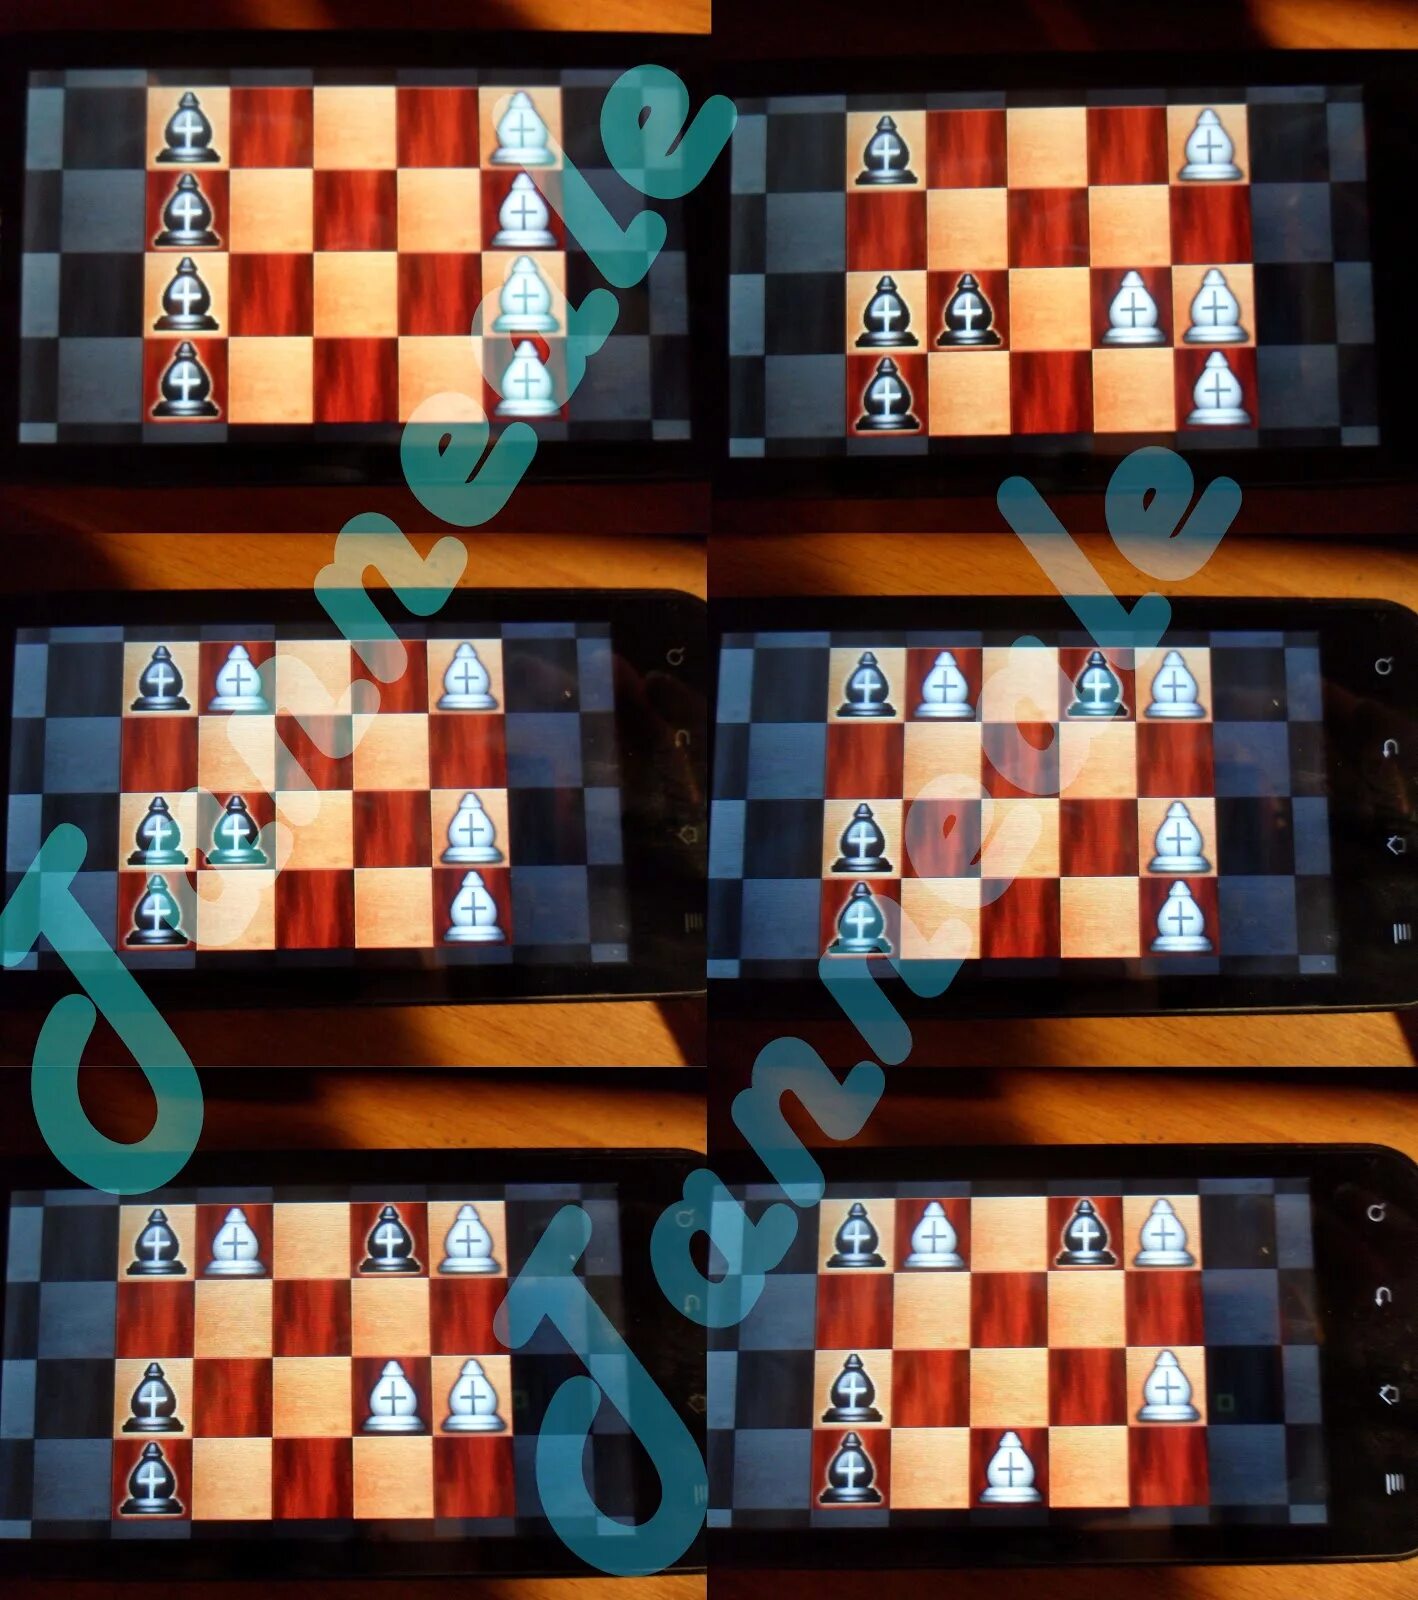 Игра разума ответы. Игры разума шахматы 2. Игры разума шахматы 1. Игры разума шахматы 7. Игры разума шахматы 4.